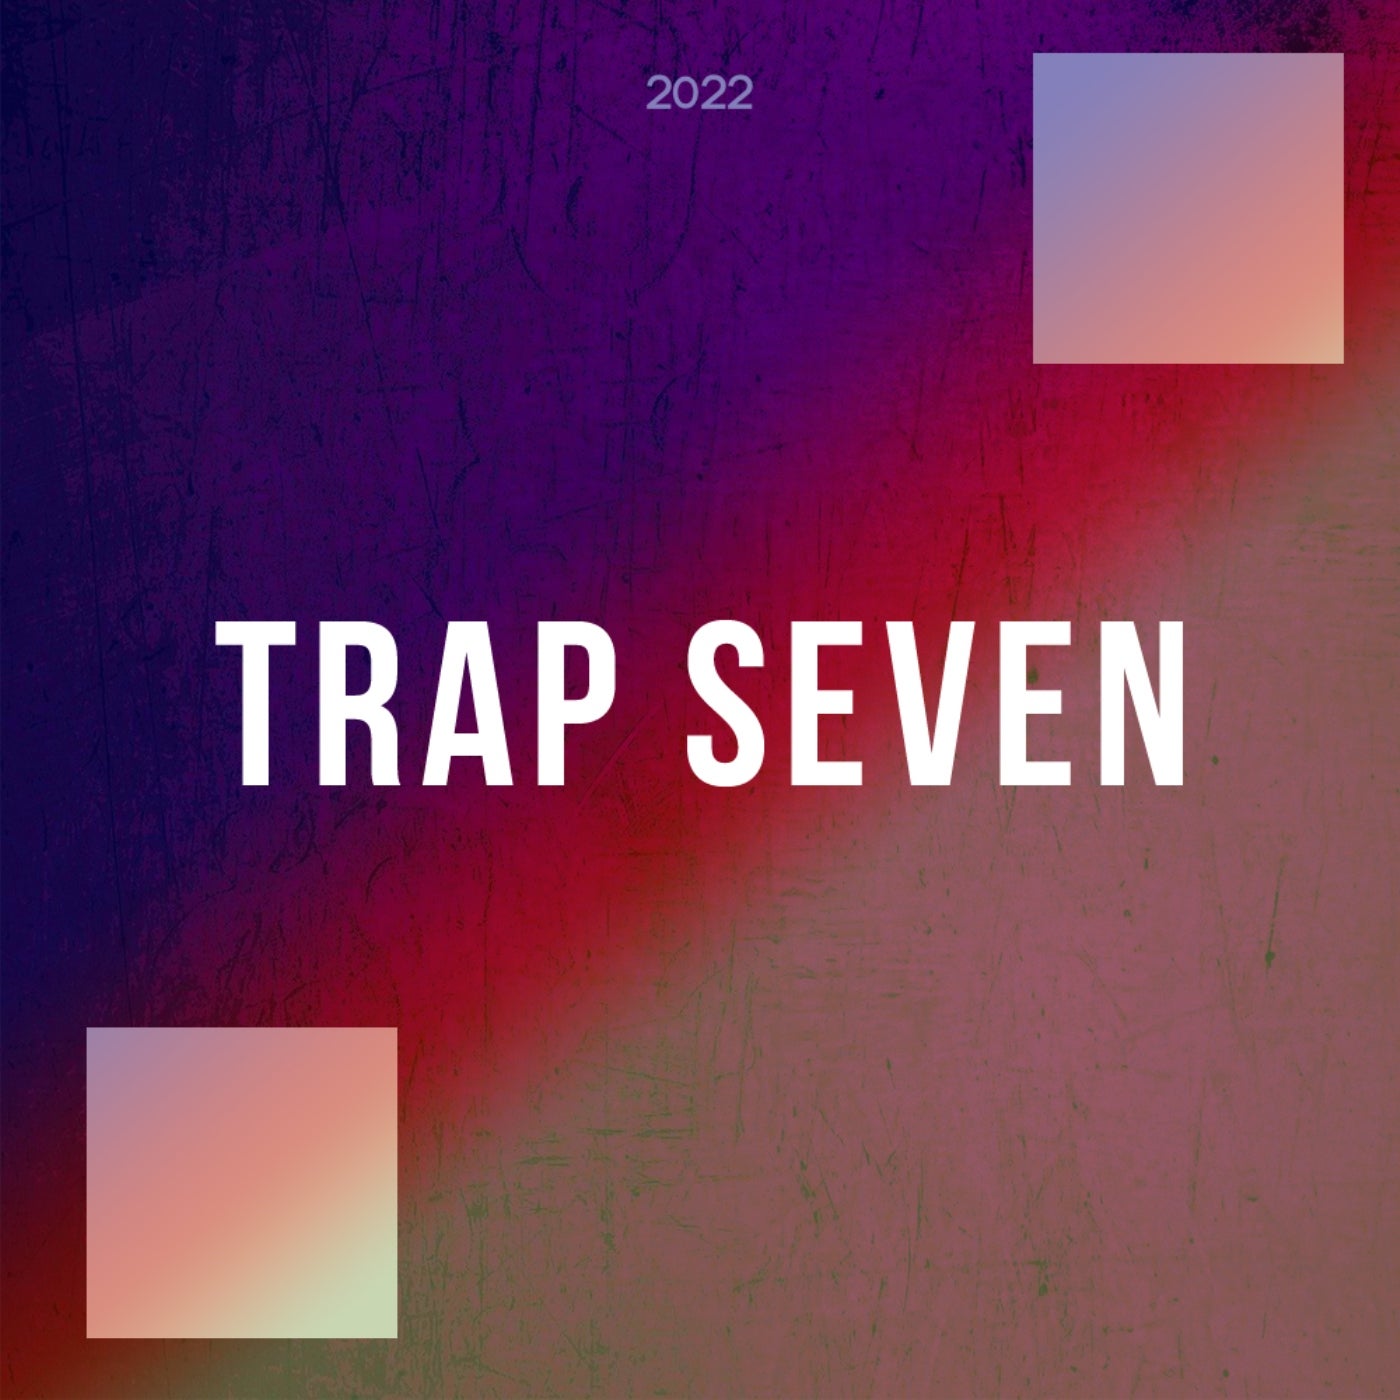 Trap Seven